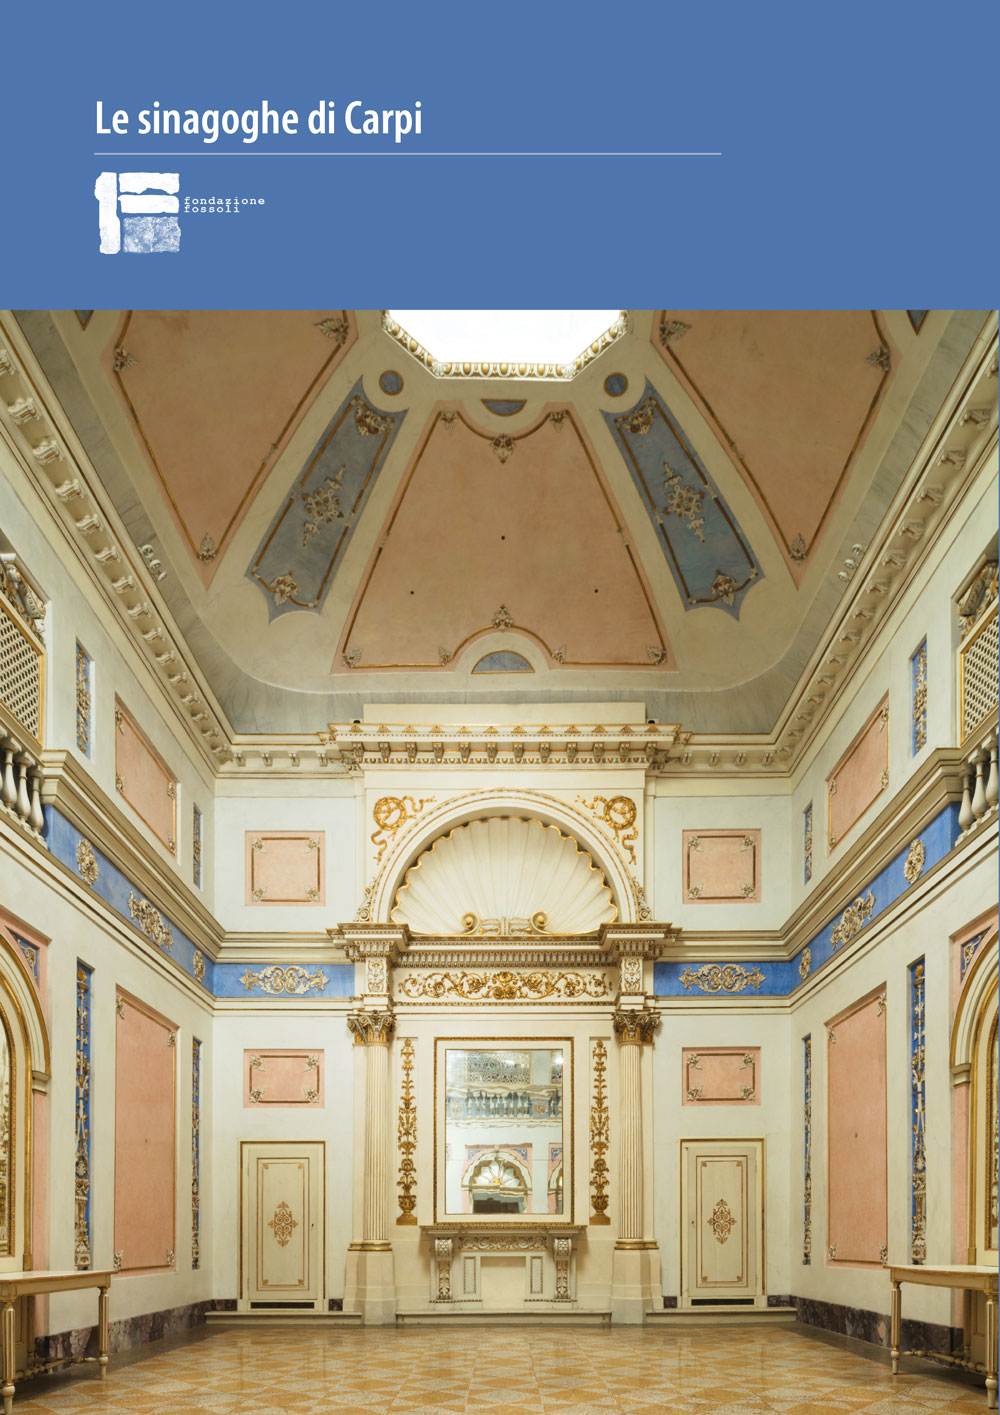 Le sinagoghe di Carpi - Bologna University Press